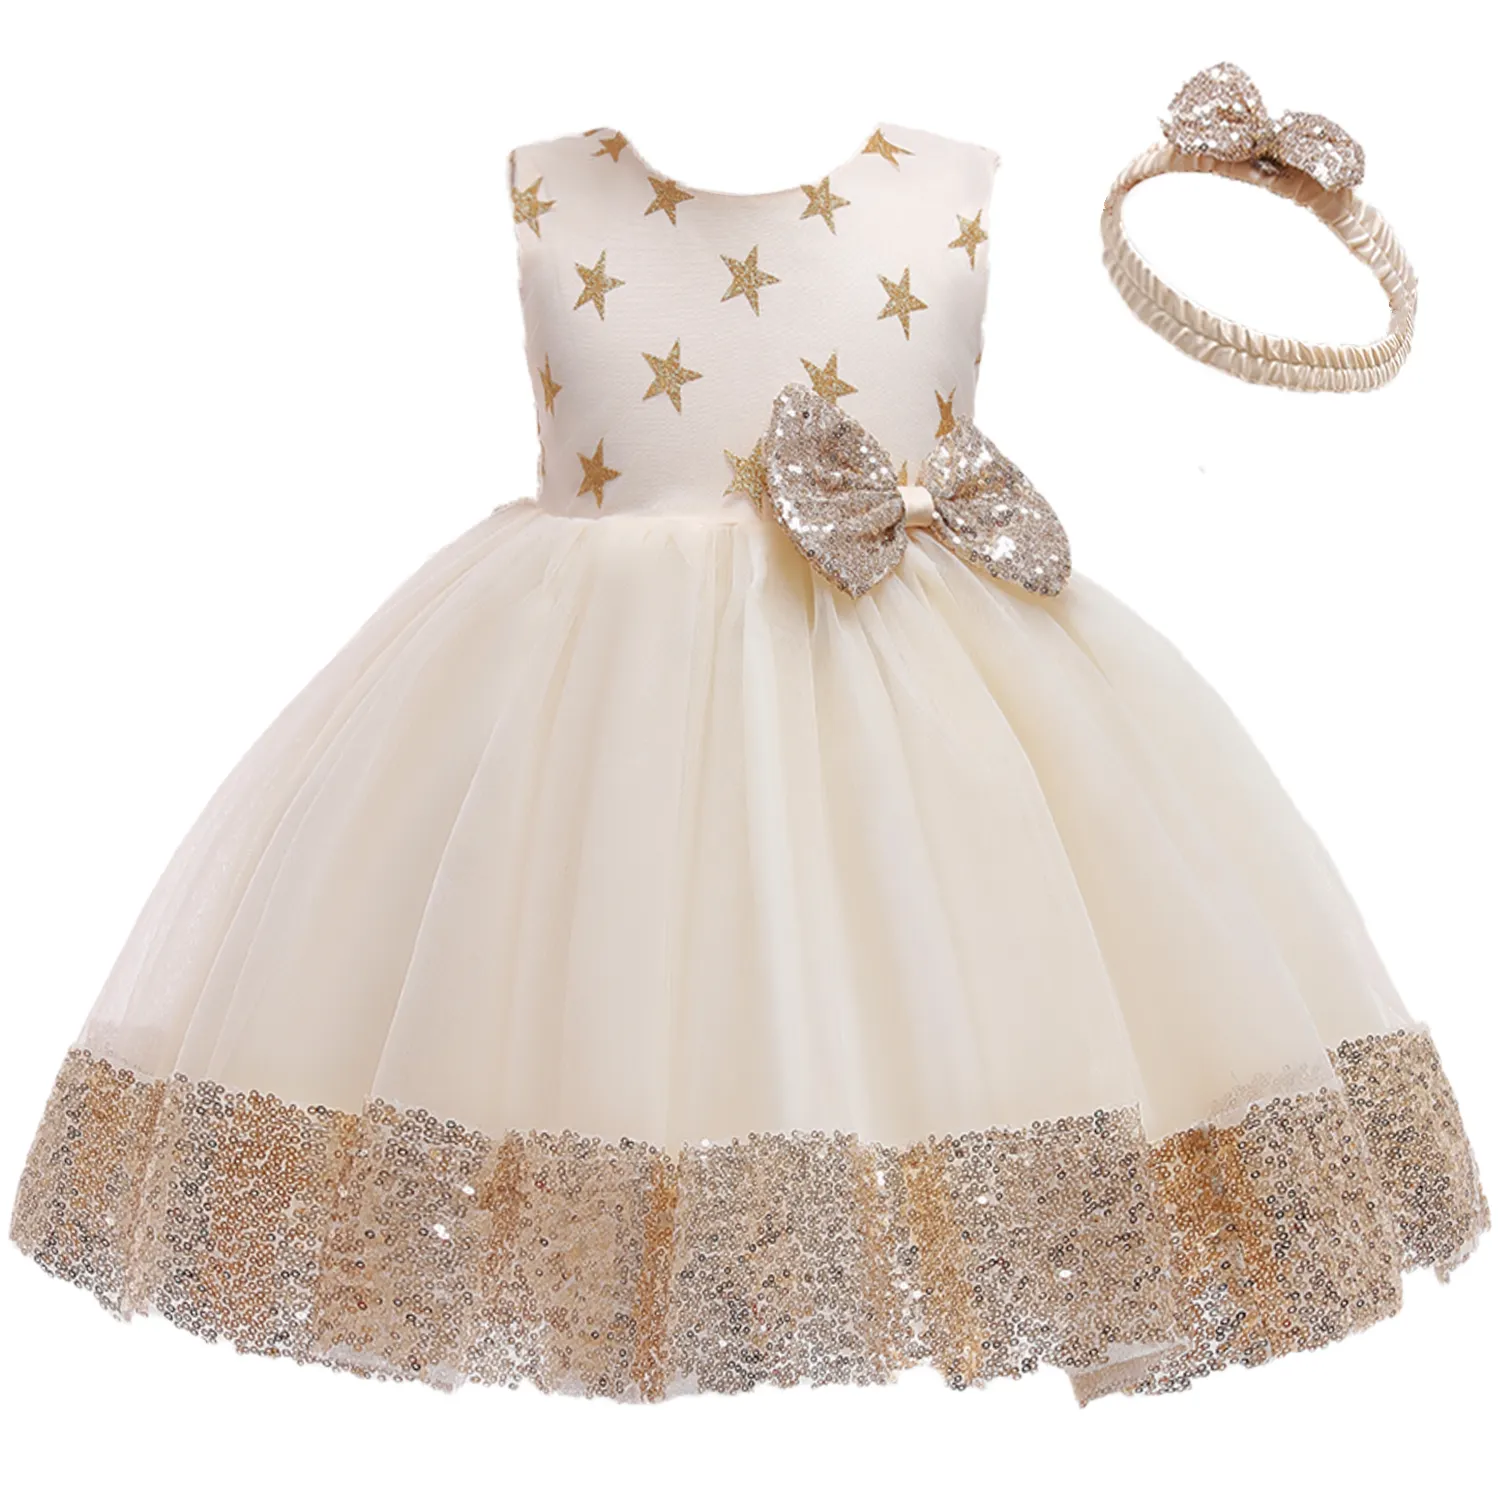 7837 enfants robe modèles dernière robe conception dentelle fleur bébé fille fête porter Western grand arc robe